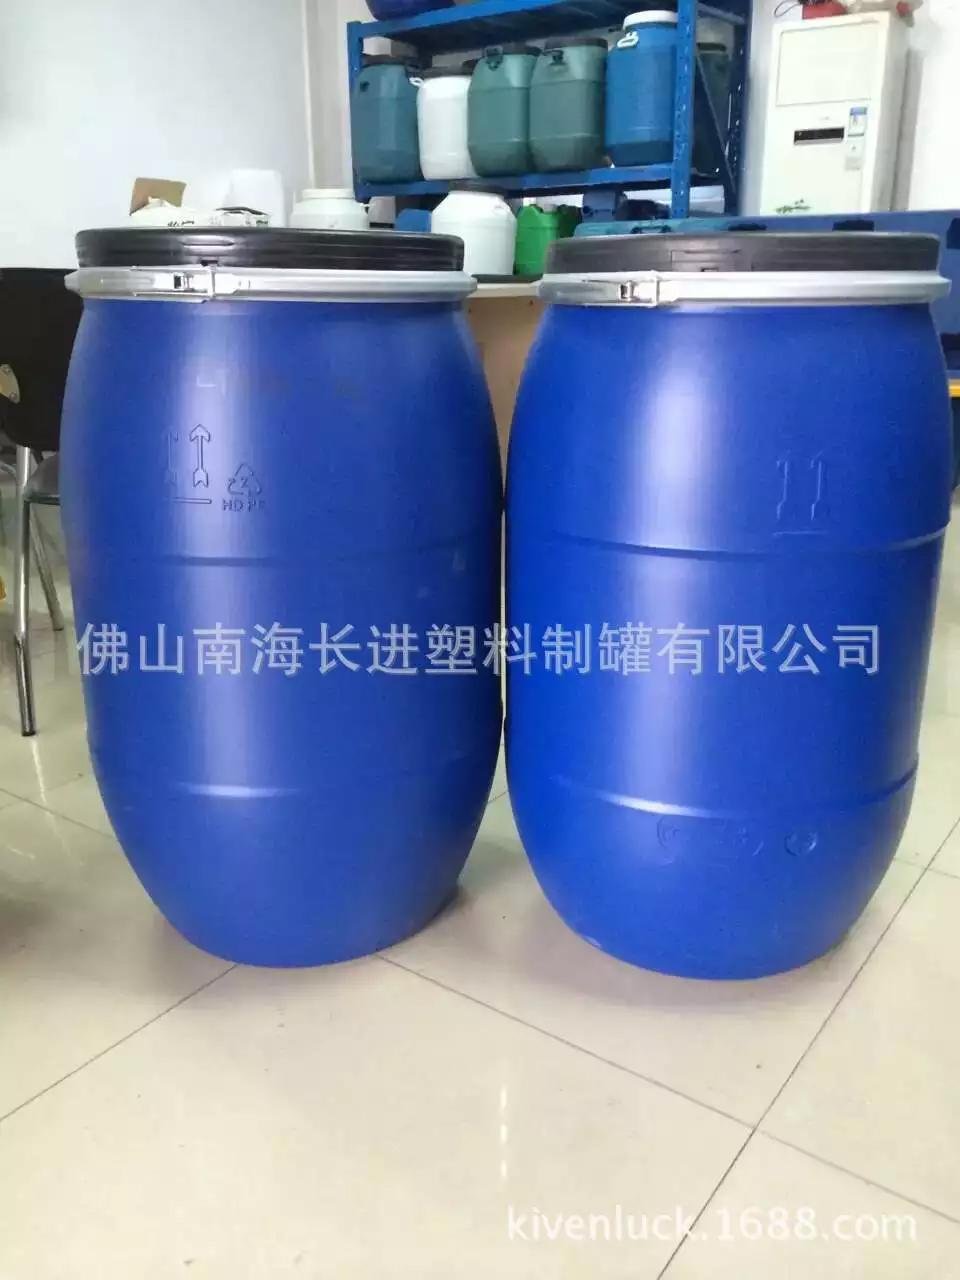 125kg Blue Chemical open barrel